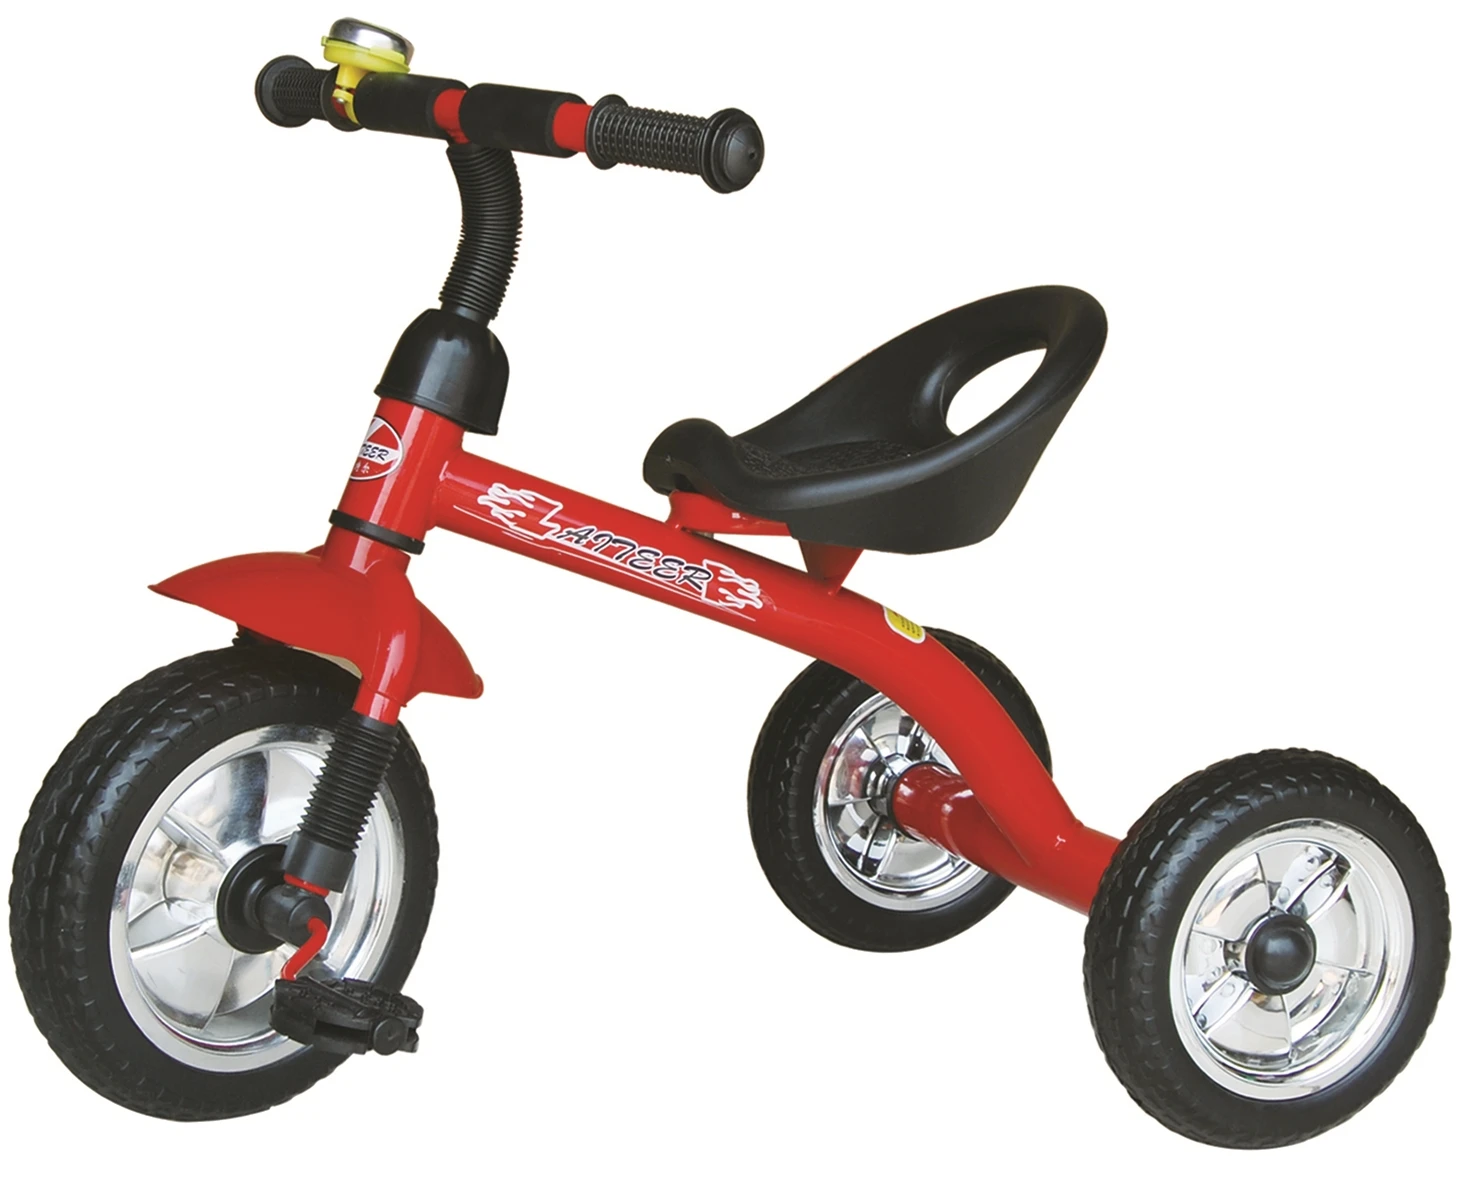 Triciclo Barato Para Niños De 2 Años - Buy Triciclo Barato ...